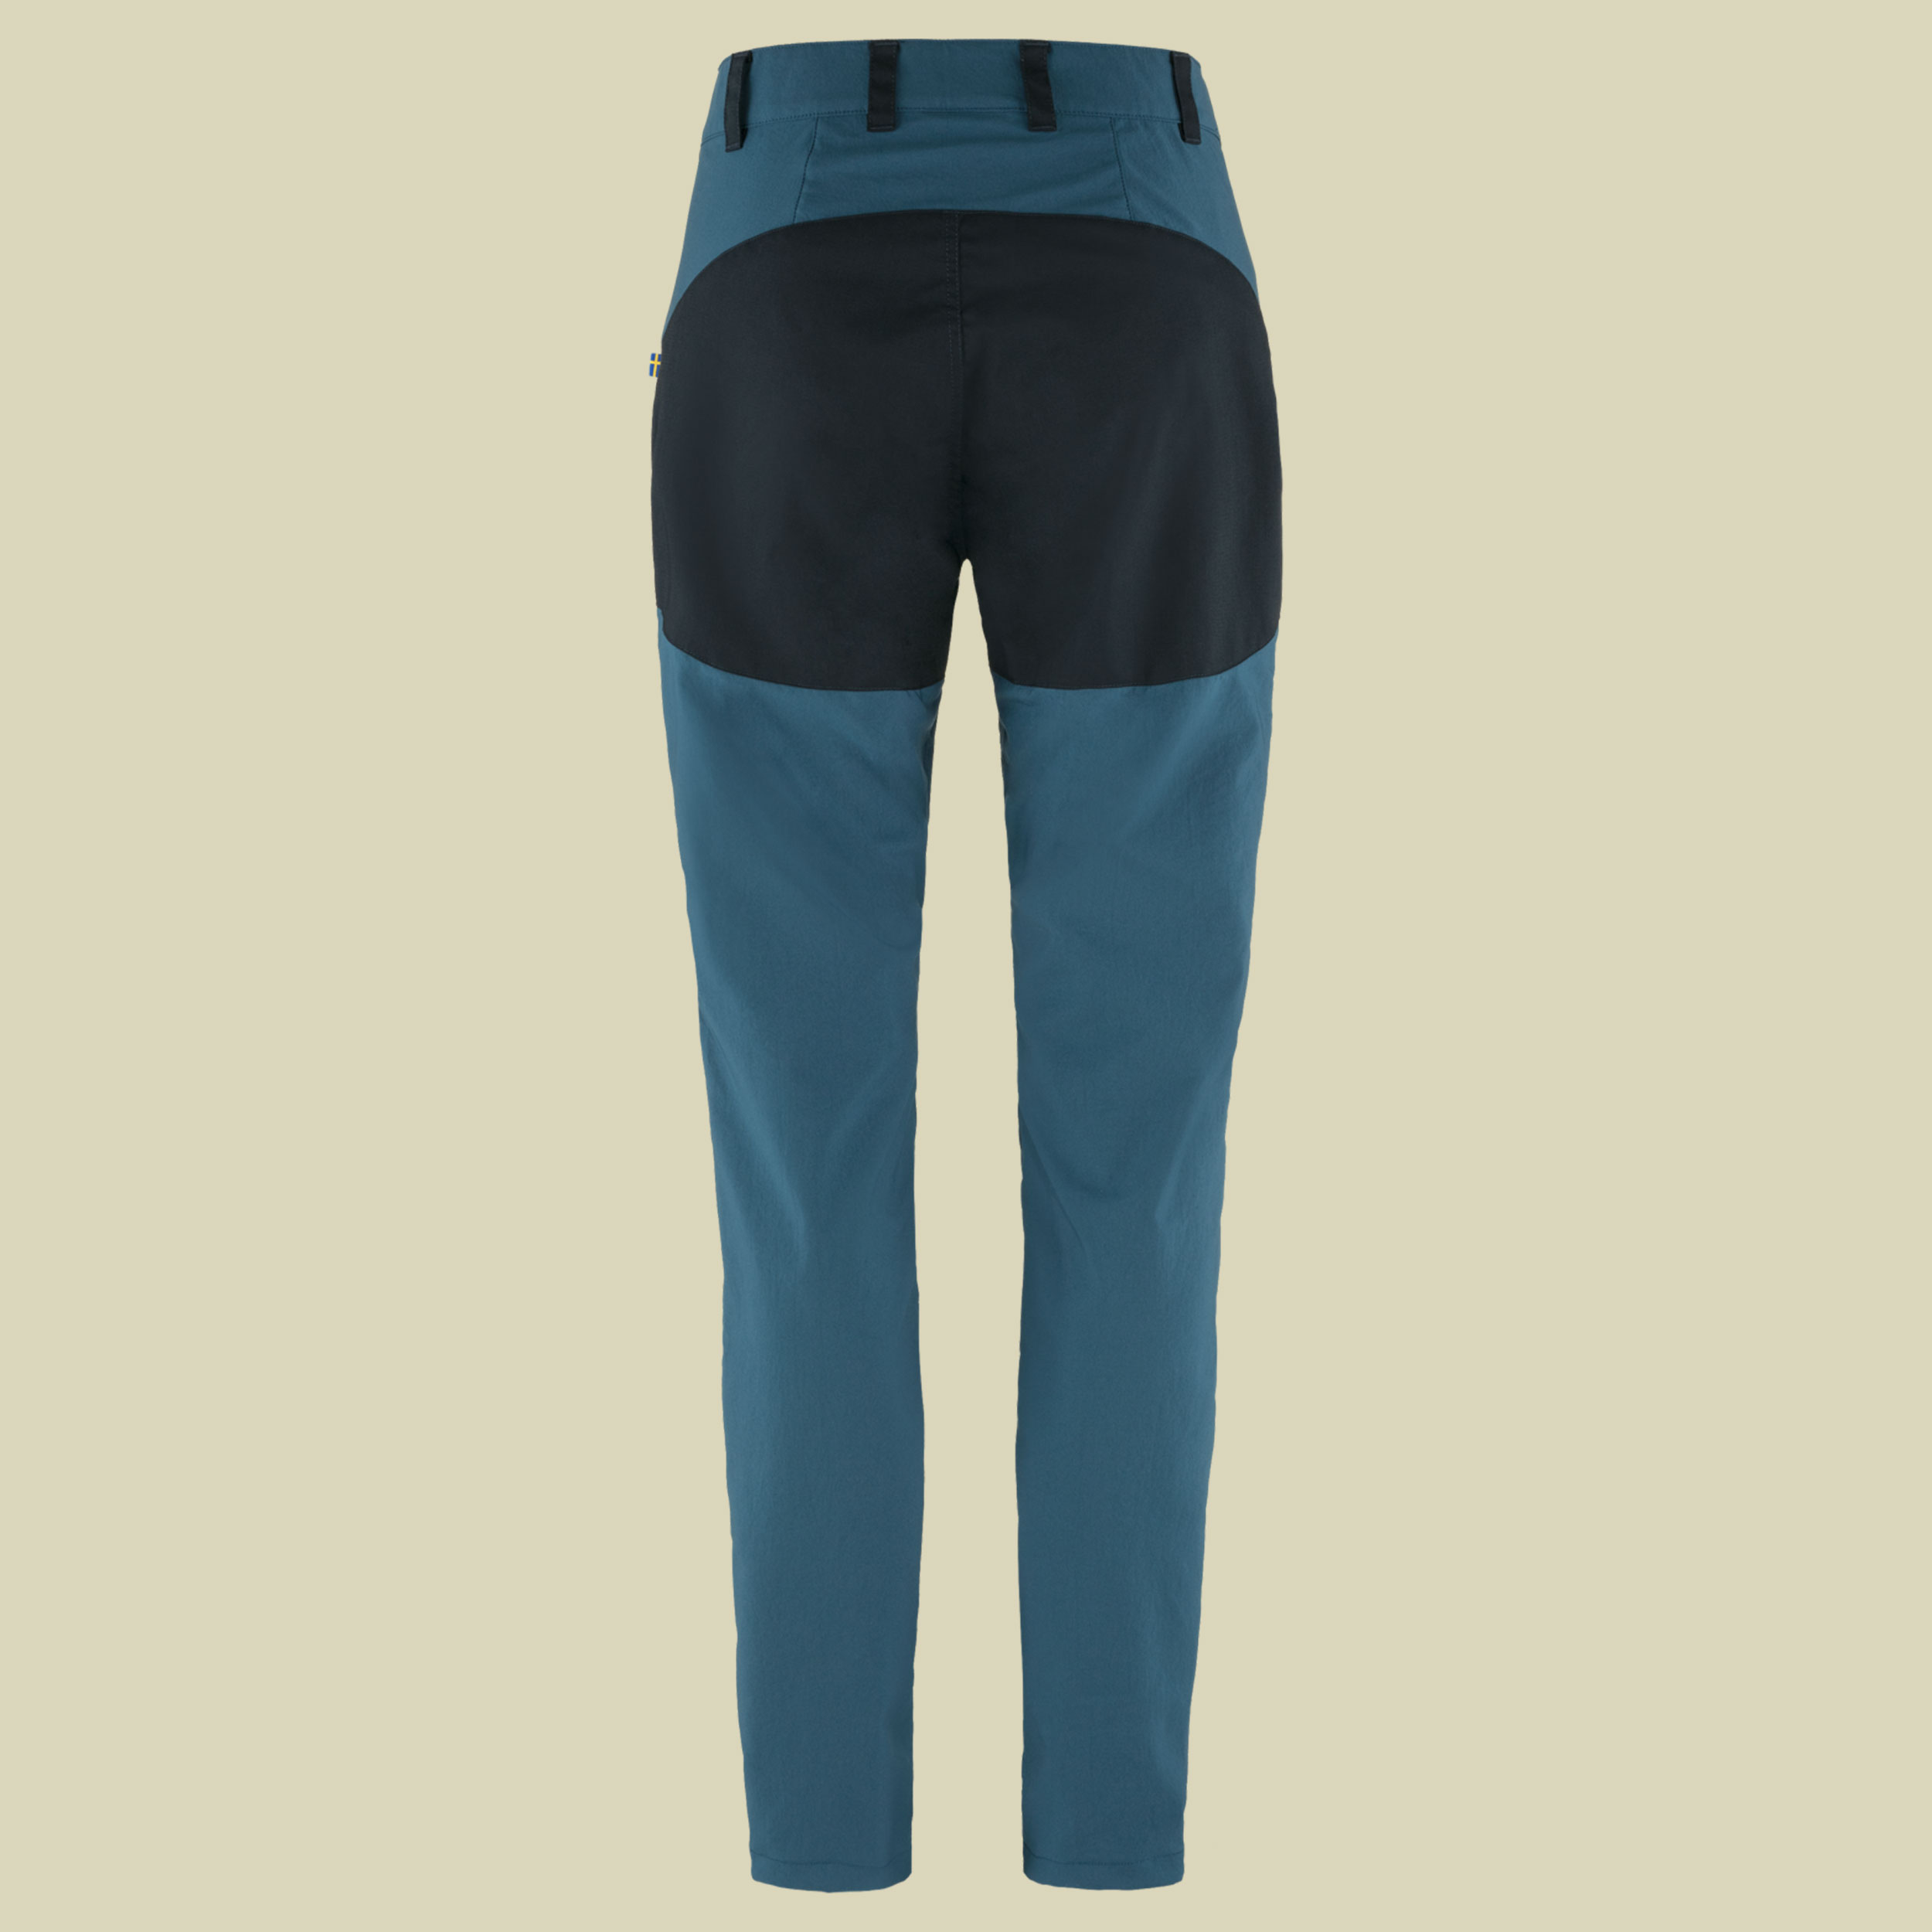 Abisko Midsummer Trousers Women Größe 40 Farbe indigo blue-dark navy